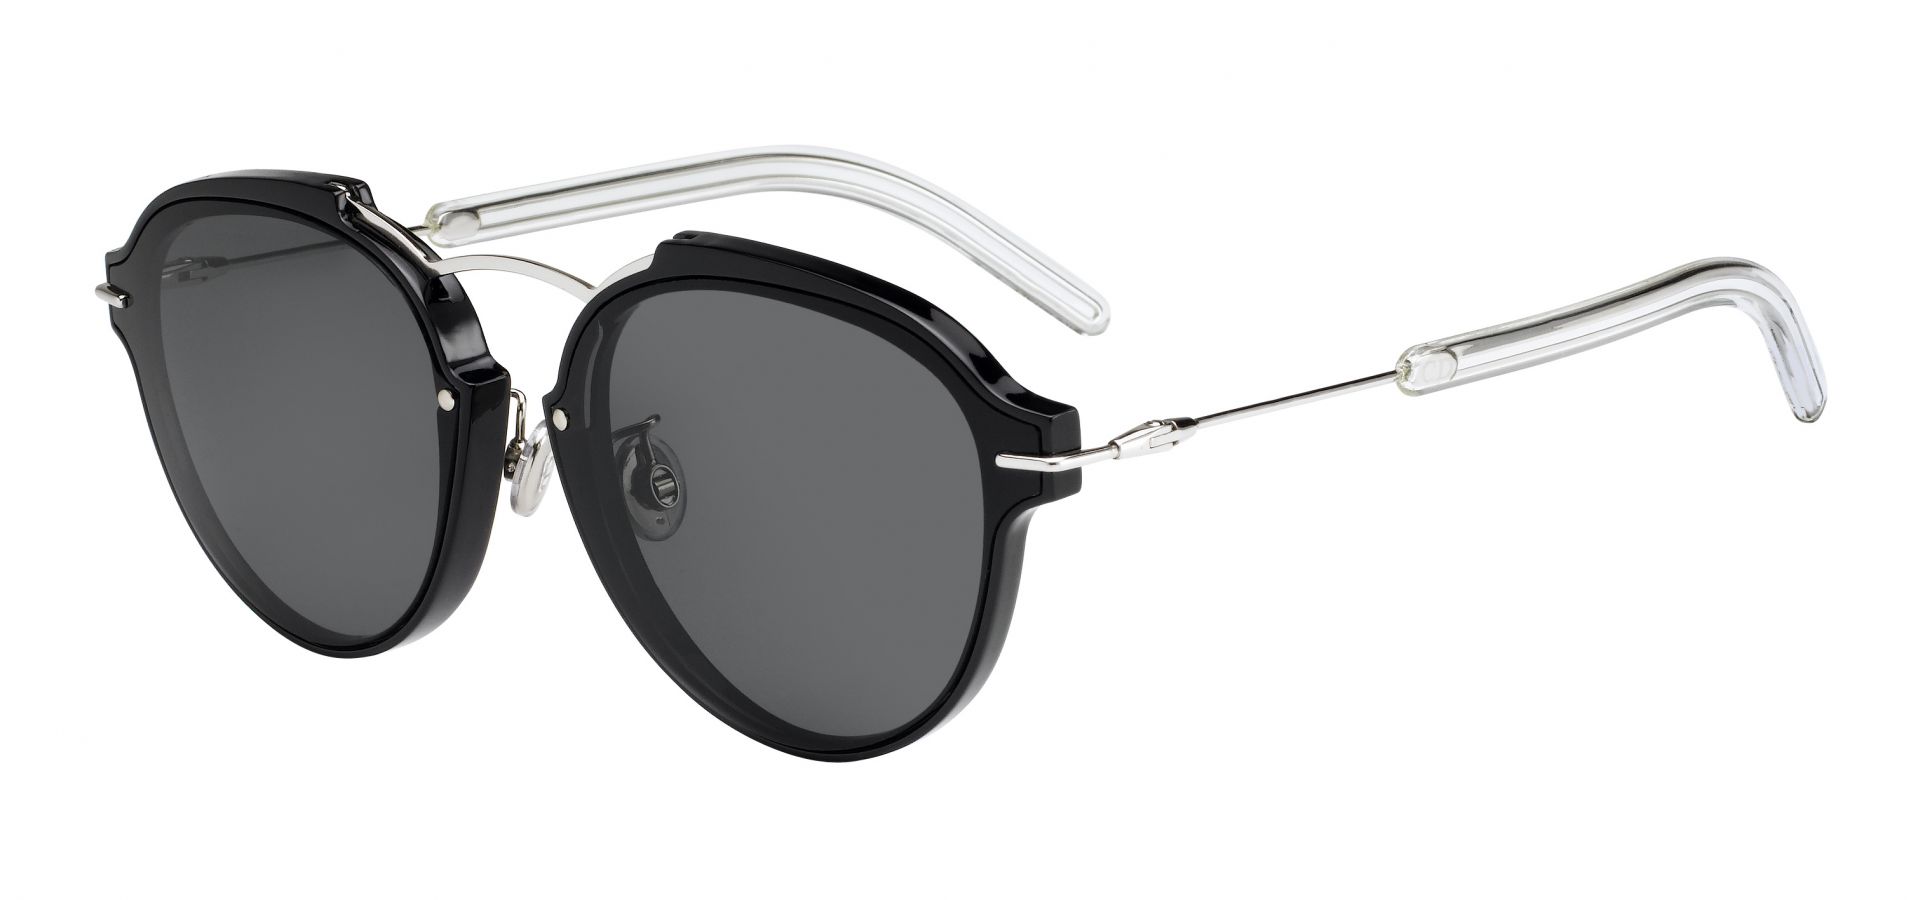 Sončna očala Christian Dior DIORECLAT: Velikost: 60/13/135, Spol: unisex, Material: acetat/kovinska